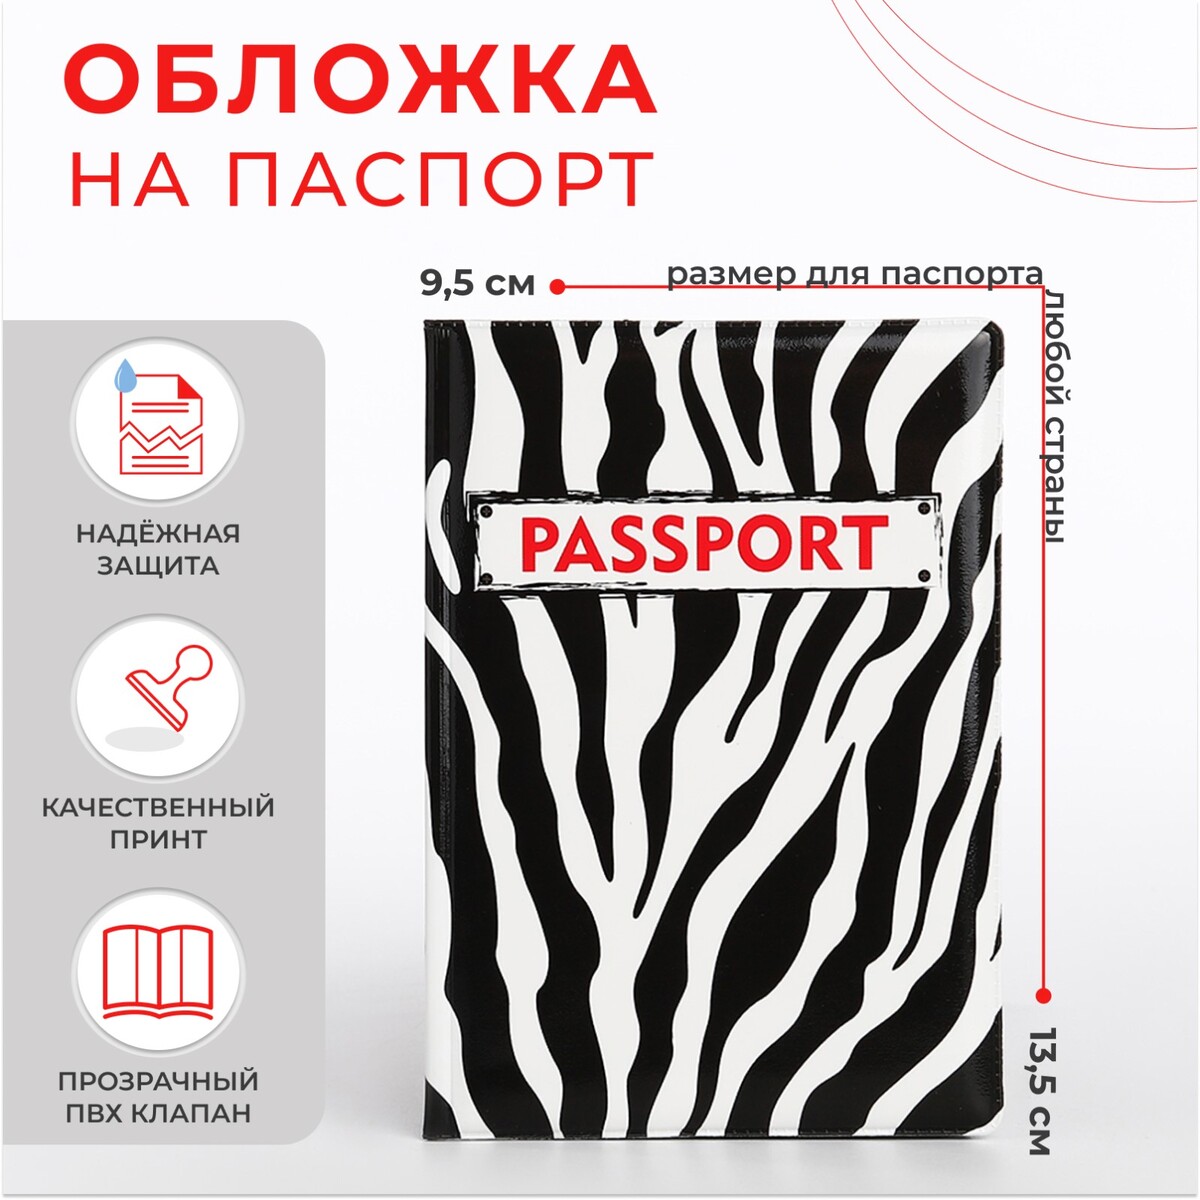 Обложка для паспорта, цвет черный/белый обложка для паспорта белый